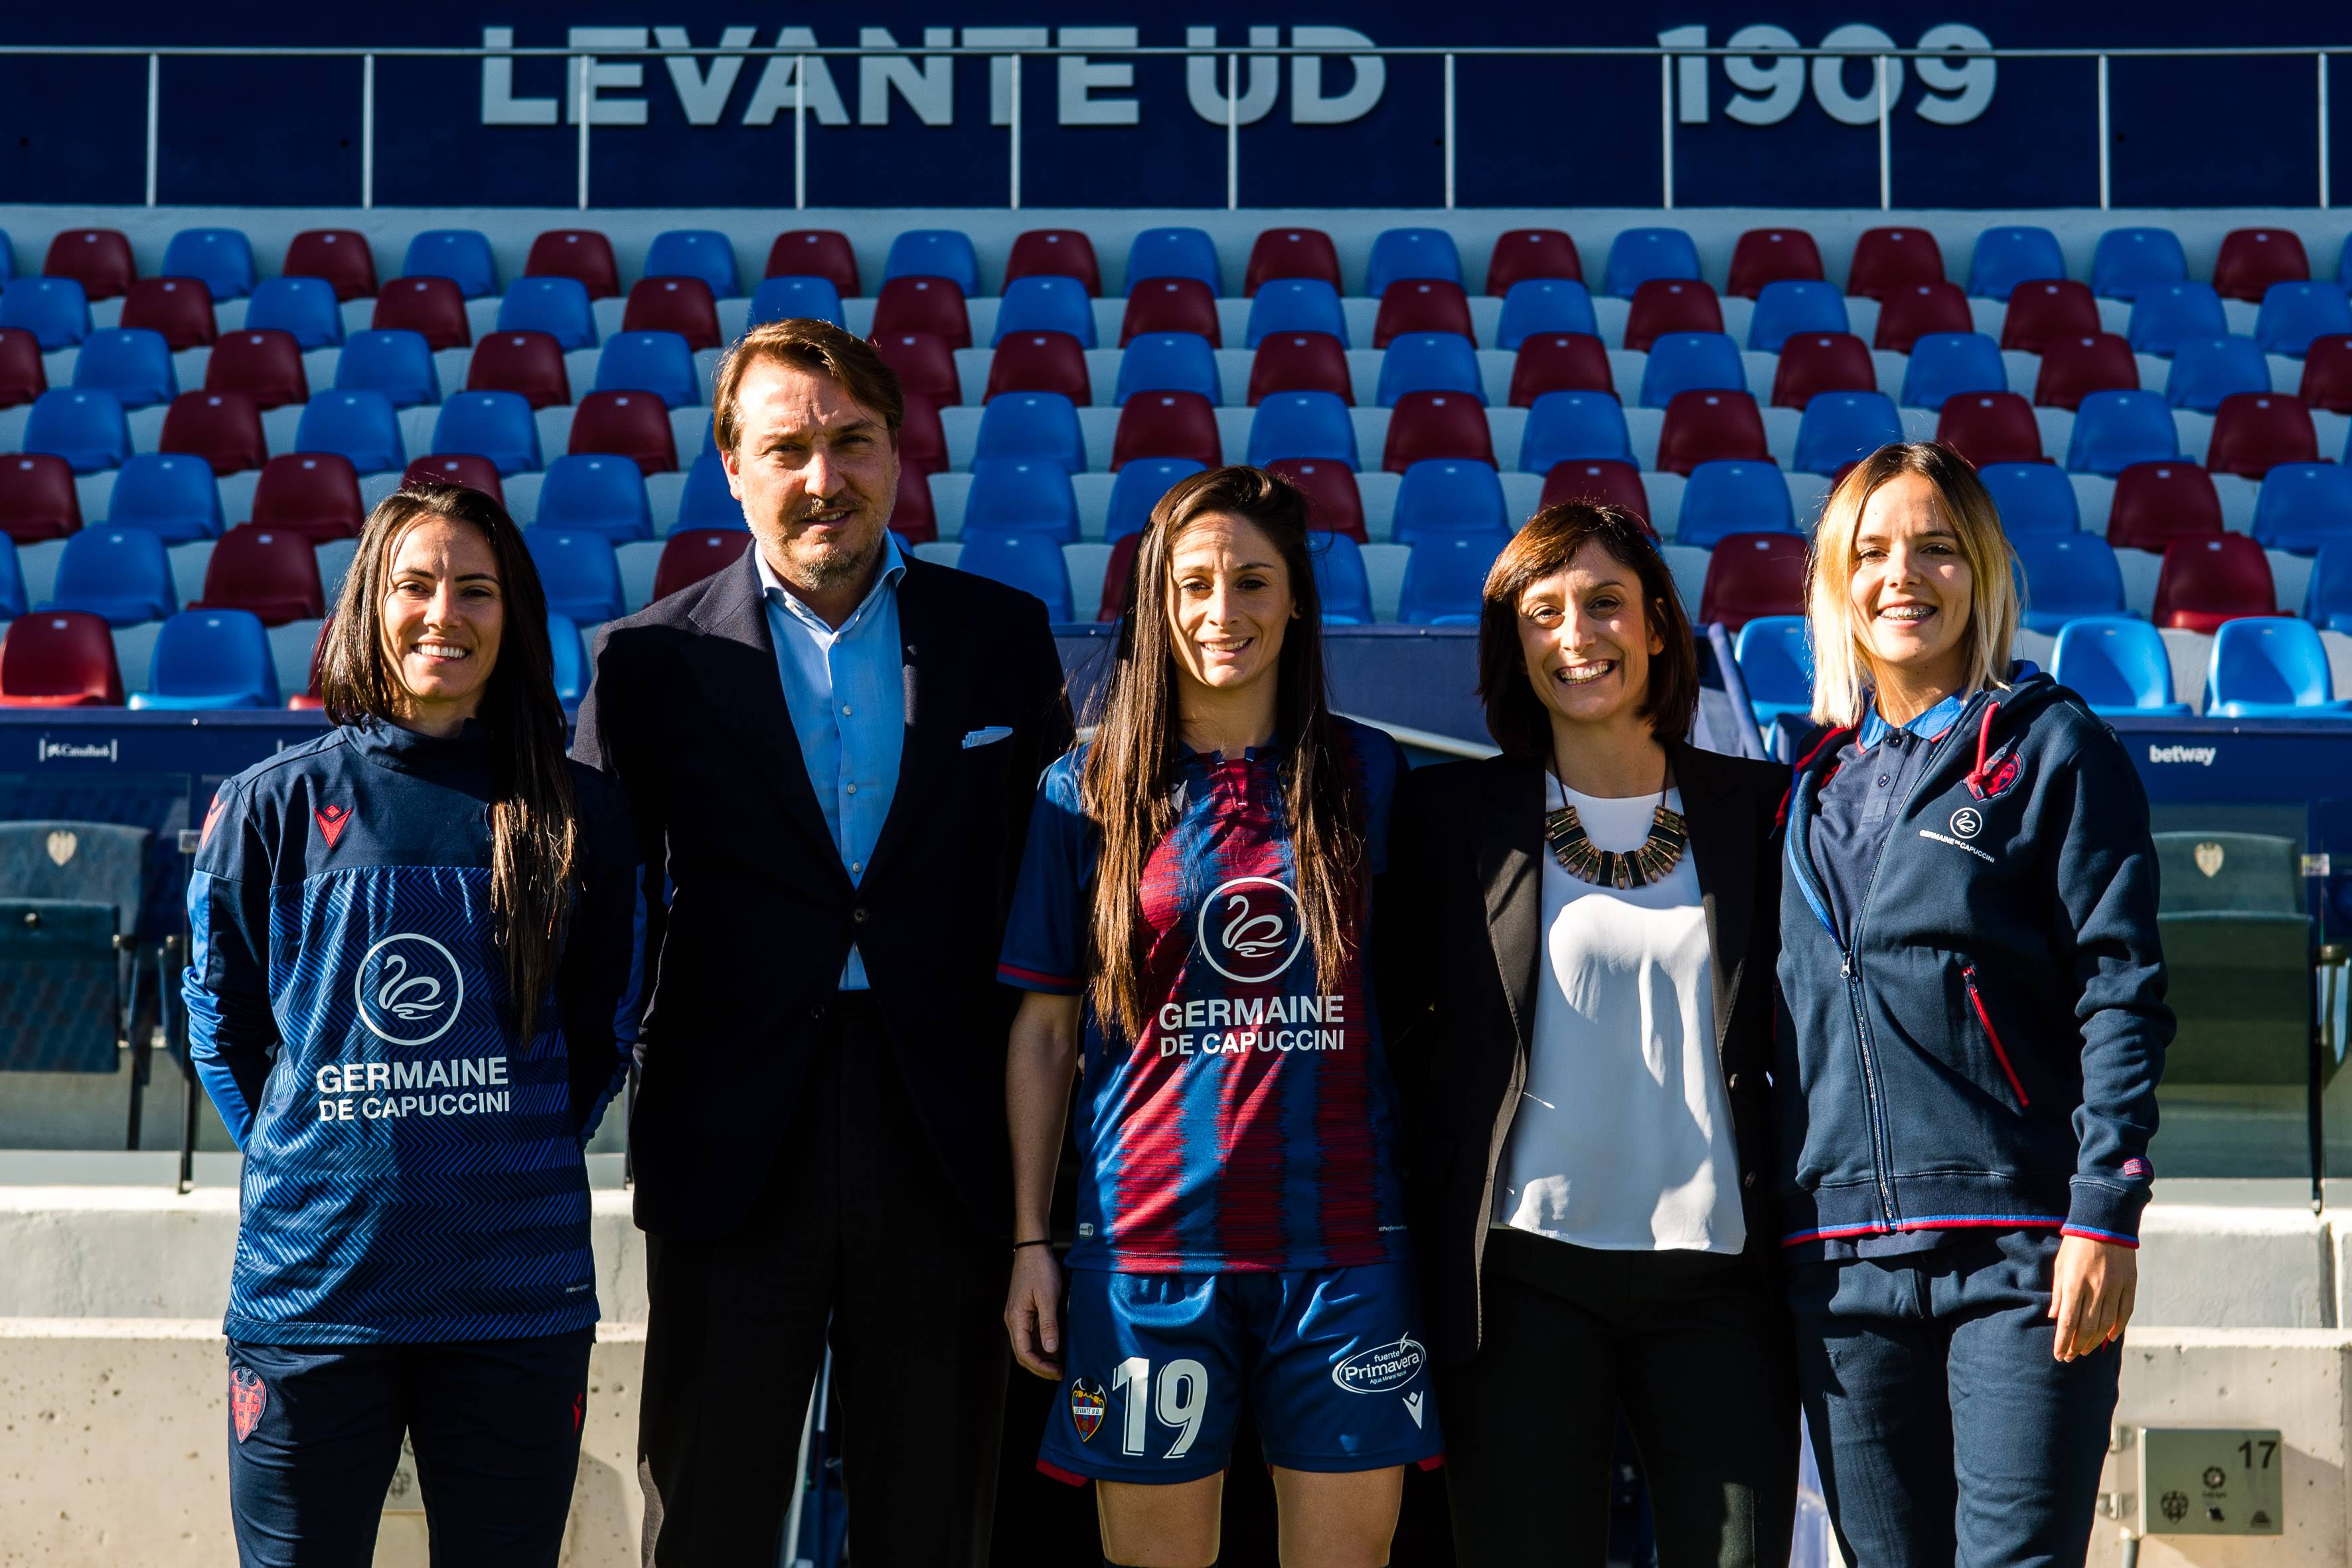 Germaine de Capuccini apuesta por el fútbol femenino patrocinando al Levante UD